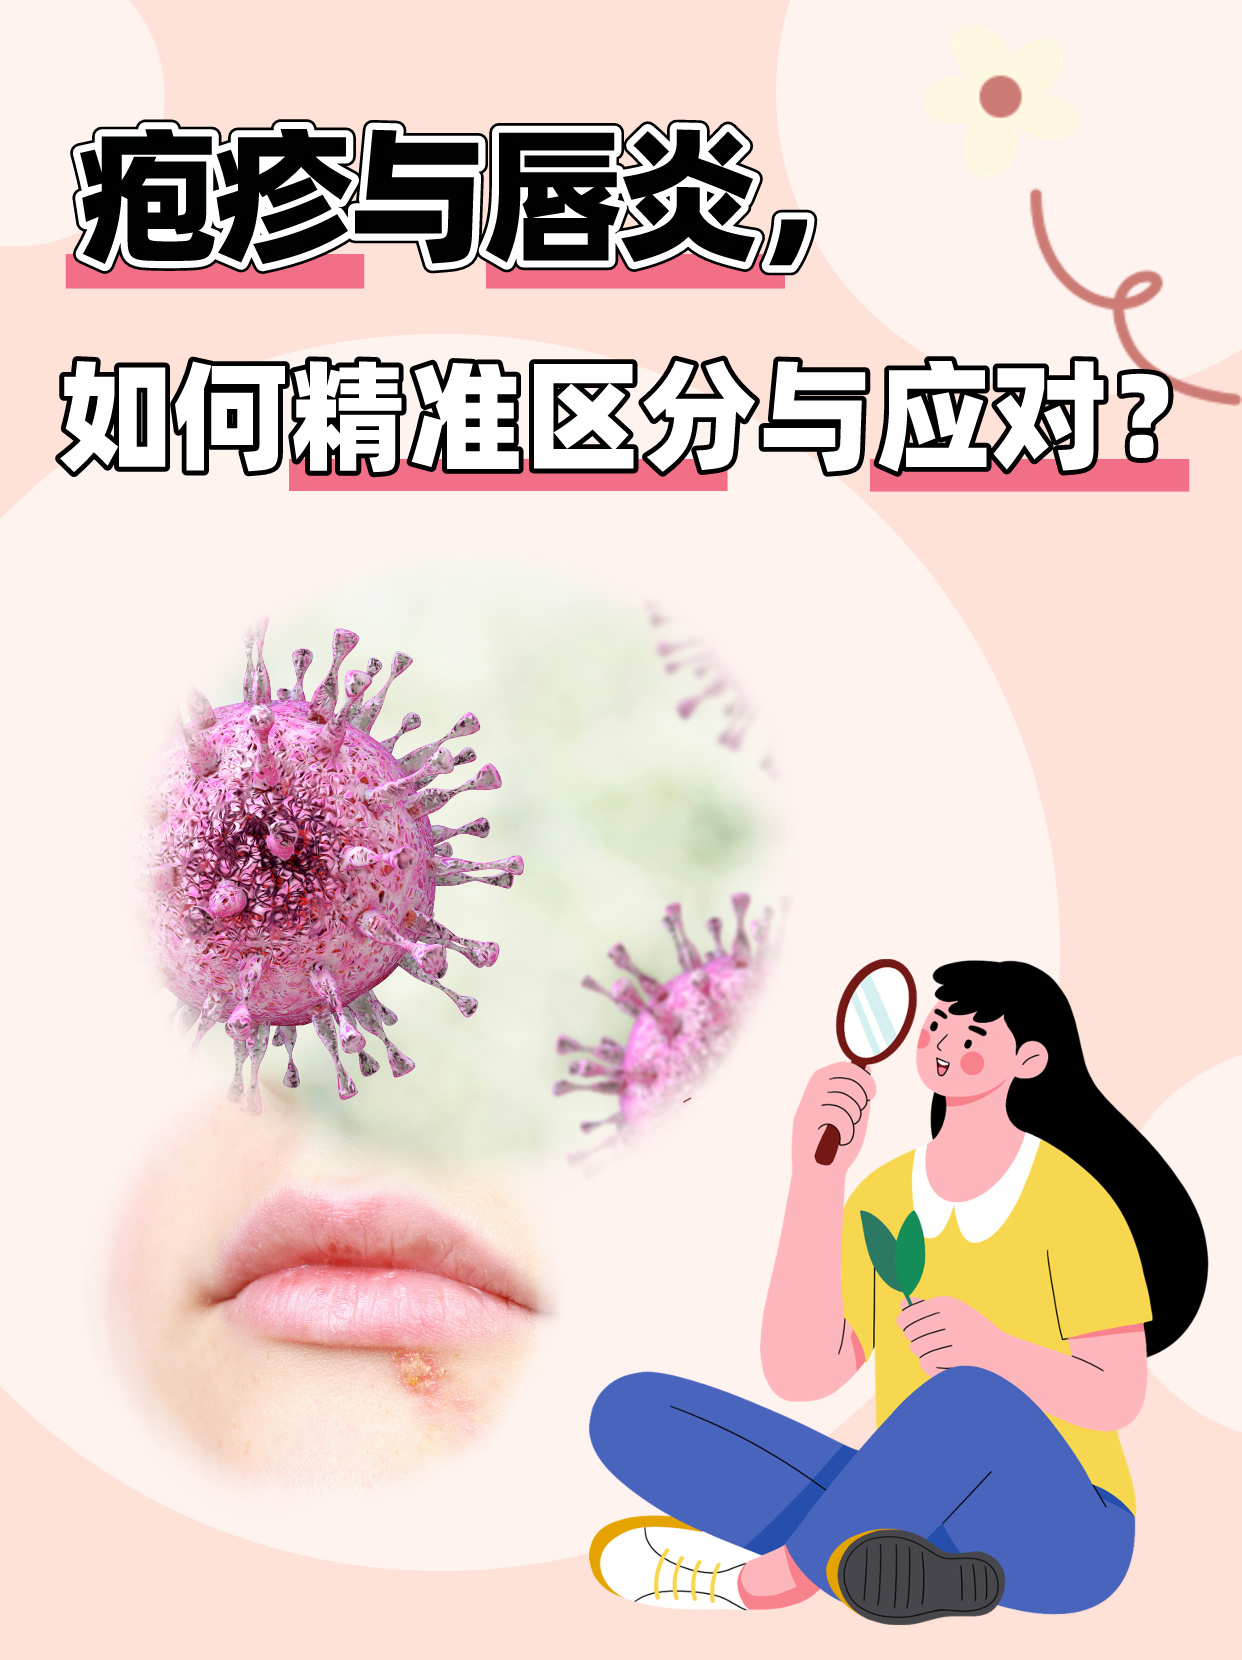 疱疹与唇炎，如何精准区分与应对？